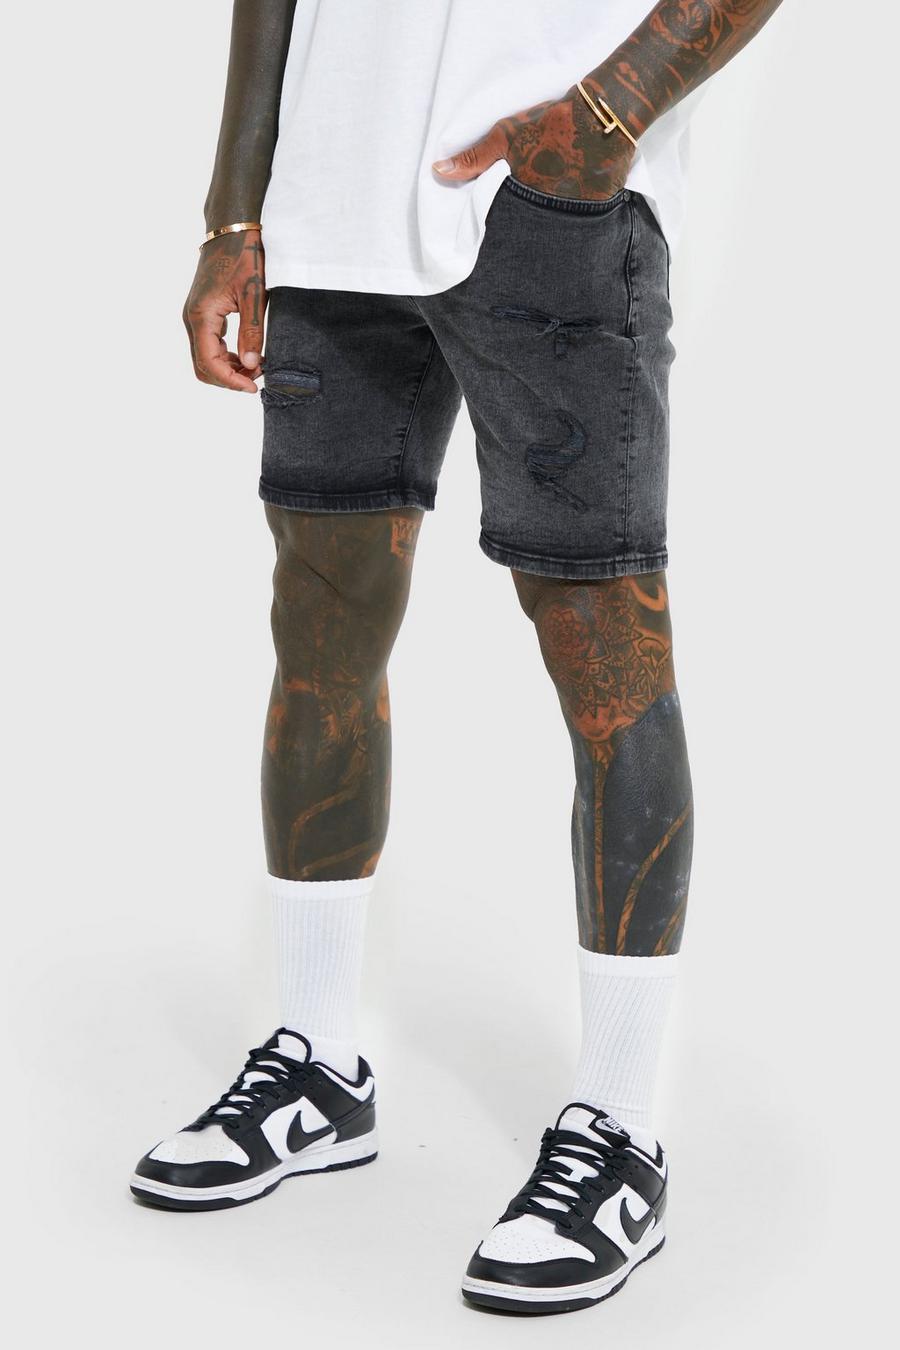 פחם gris שורט סקיני מבד ג'ינס נמתח עם קרעים וטלאים